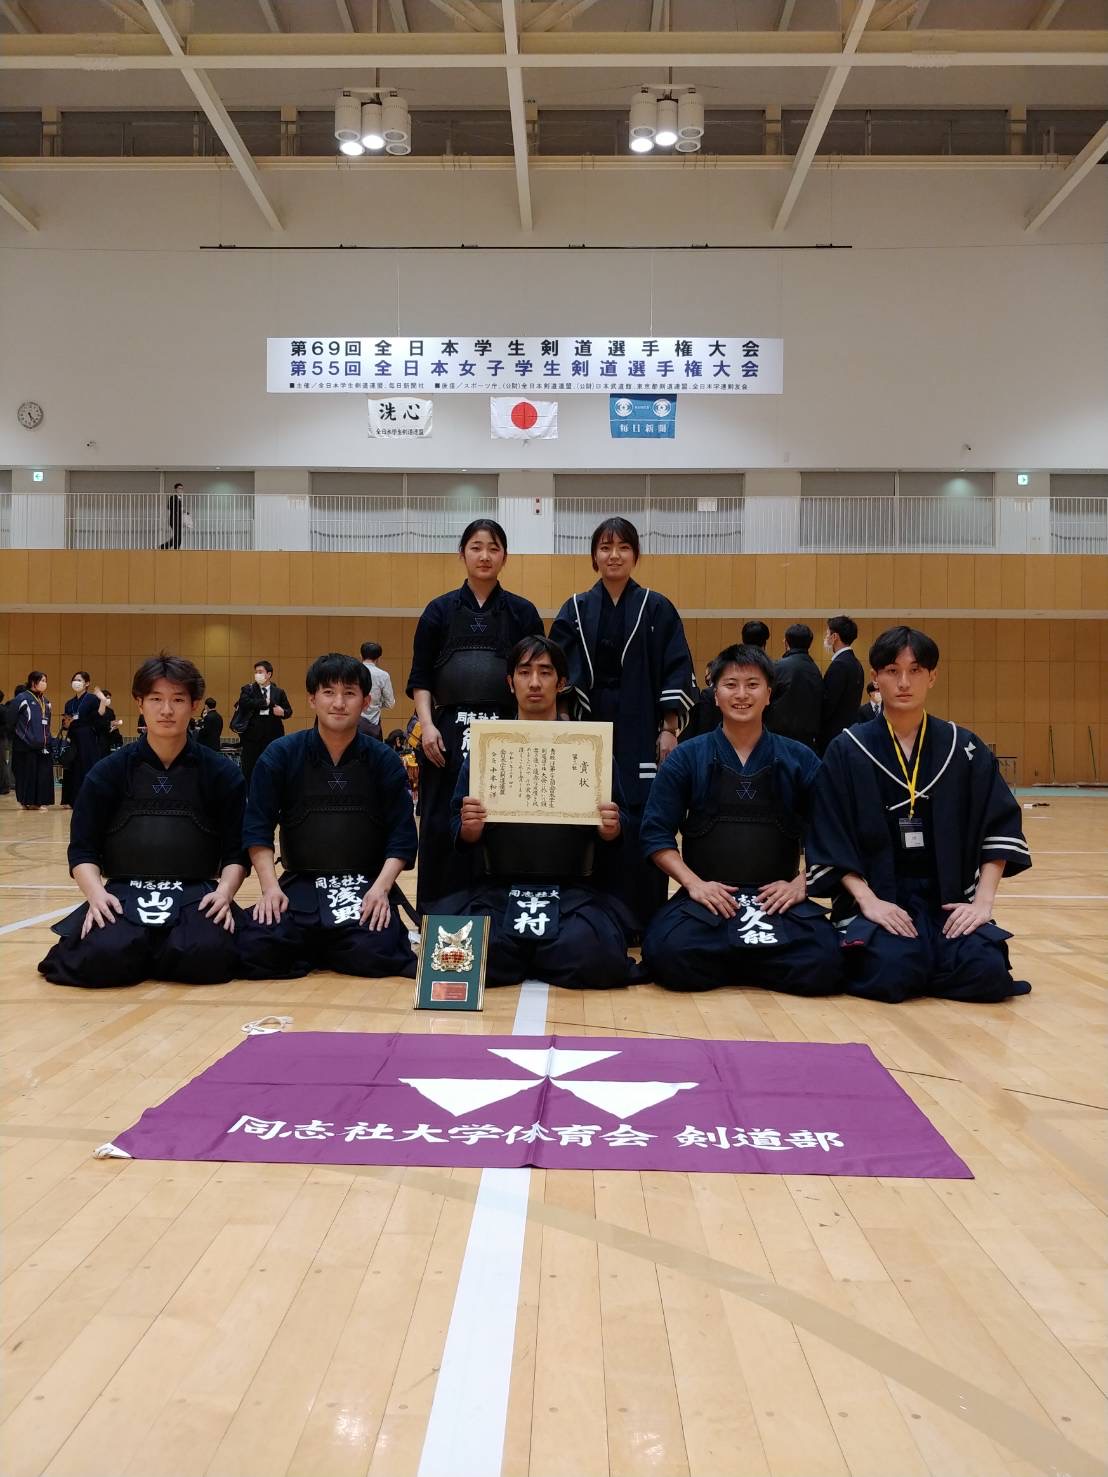 【大会結果】 第69回全日本学生剣道選手権大会、第55回全日本女子学生剣道選手権大会